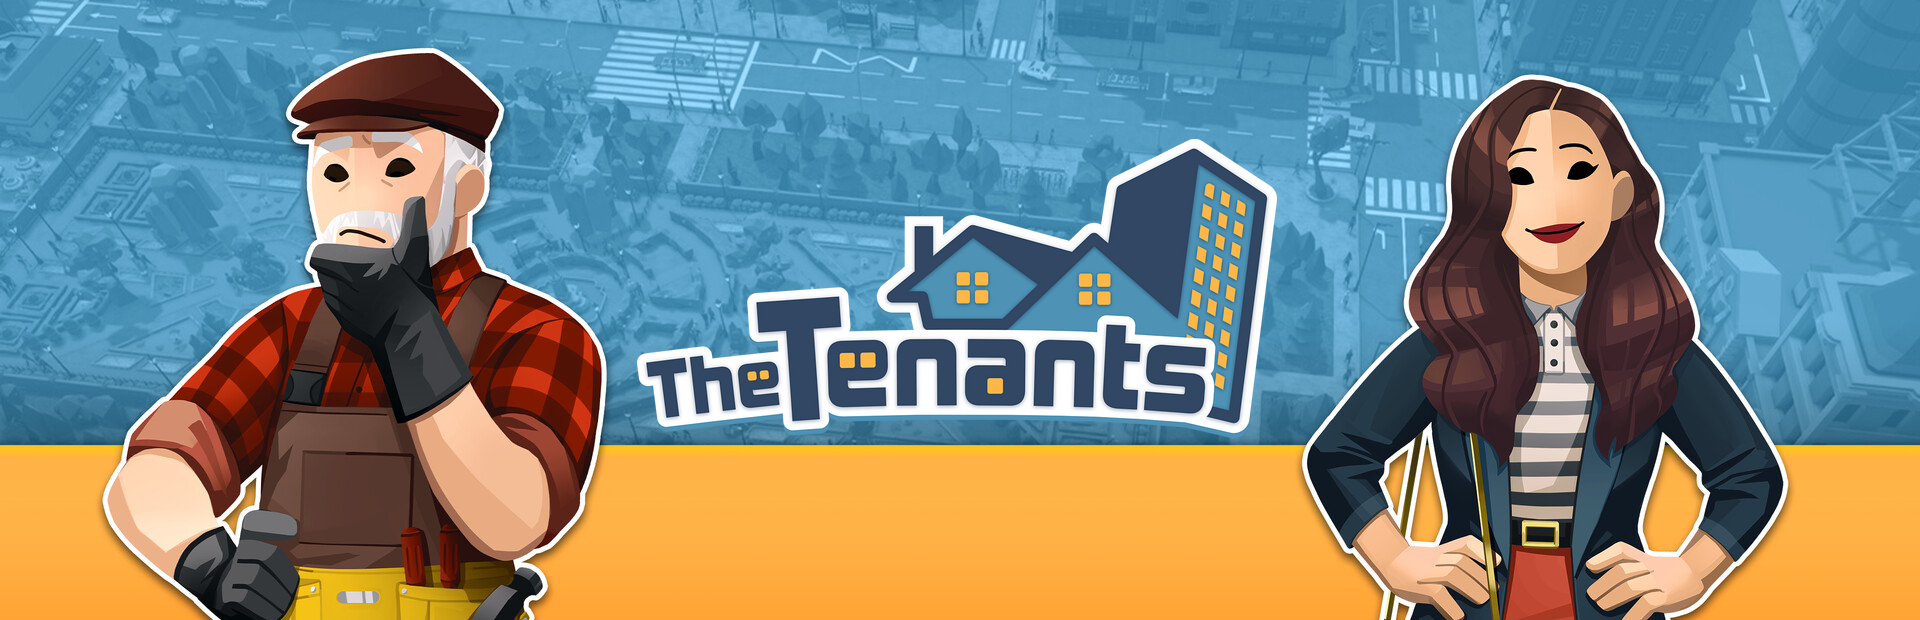 دانلود بازی The Tenants برای کامپیوتر | گیمباتو